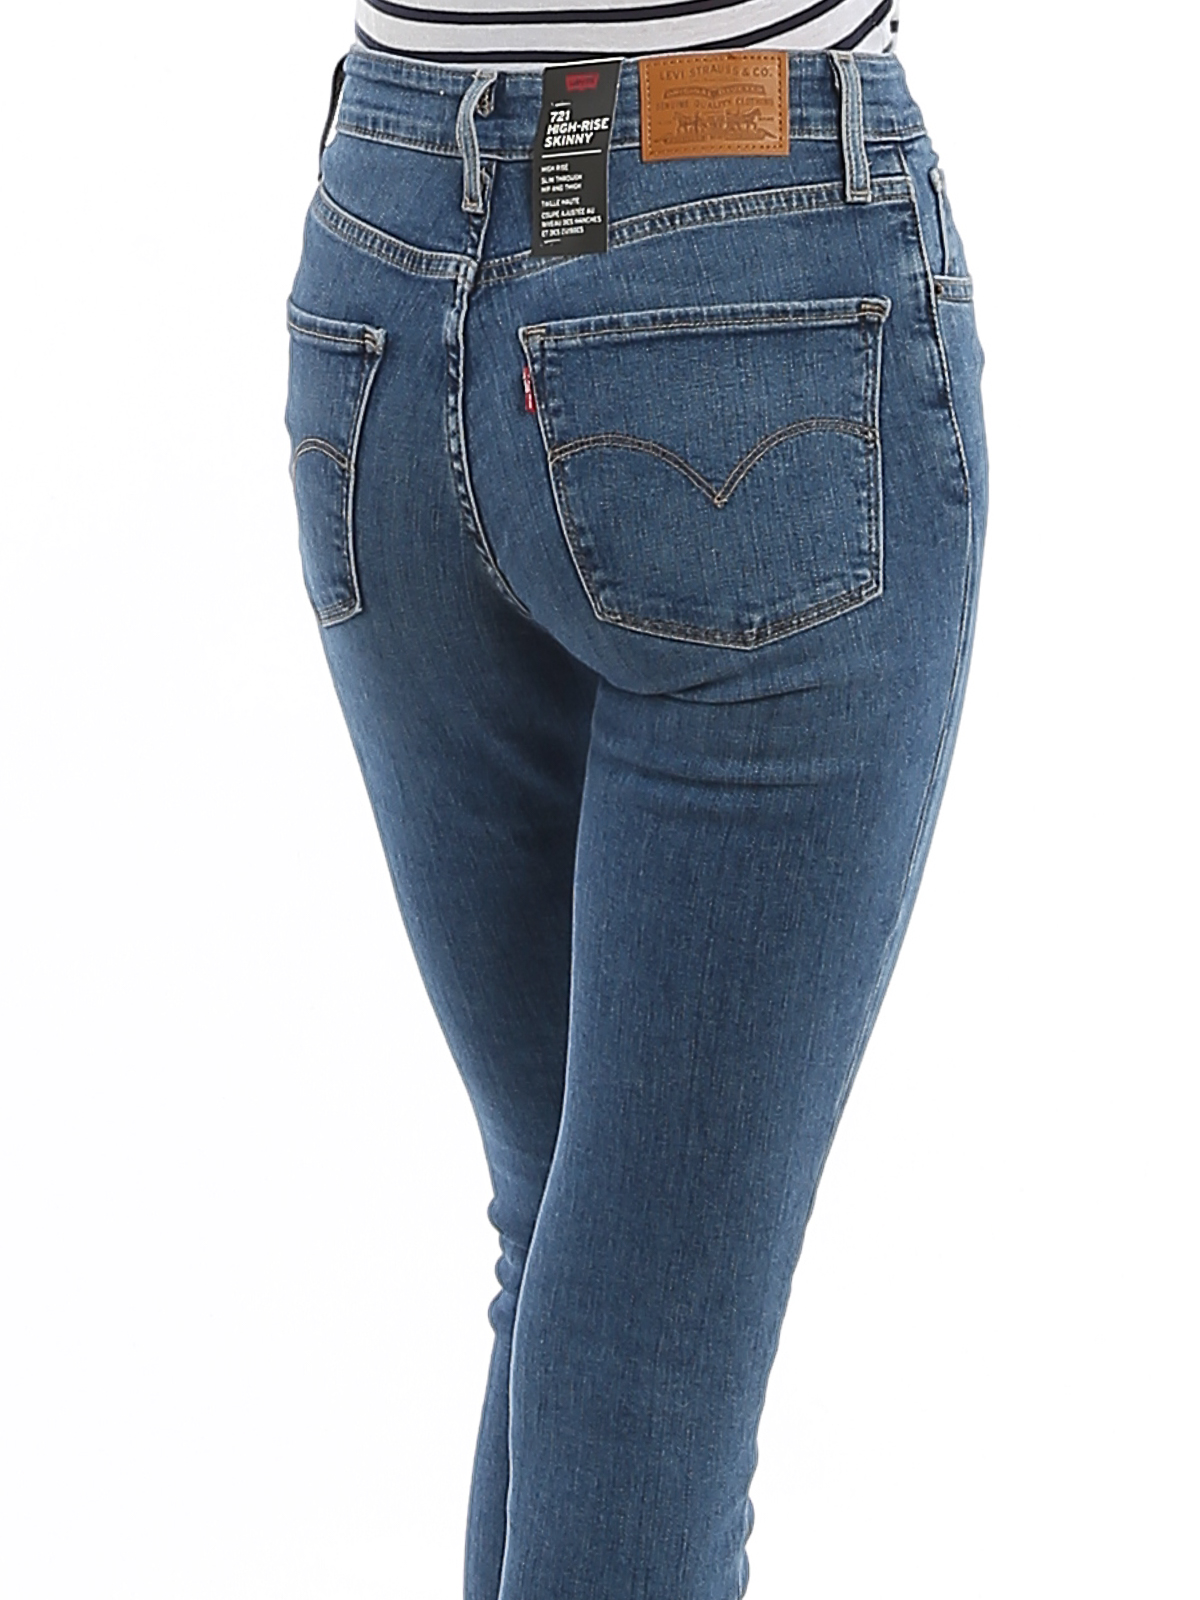 levis jeans offer online